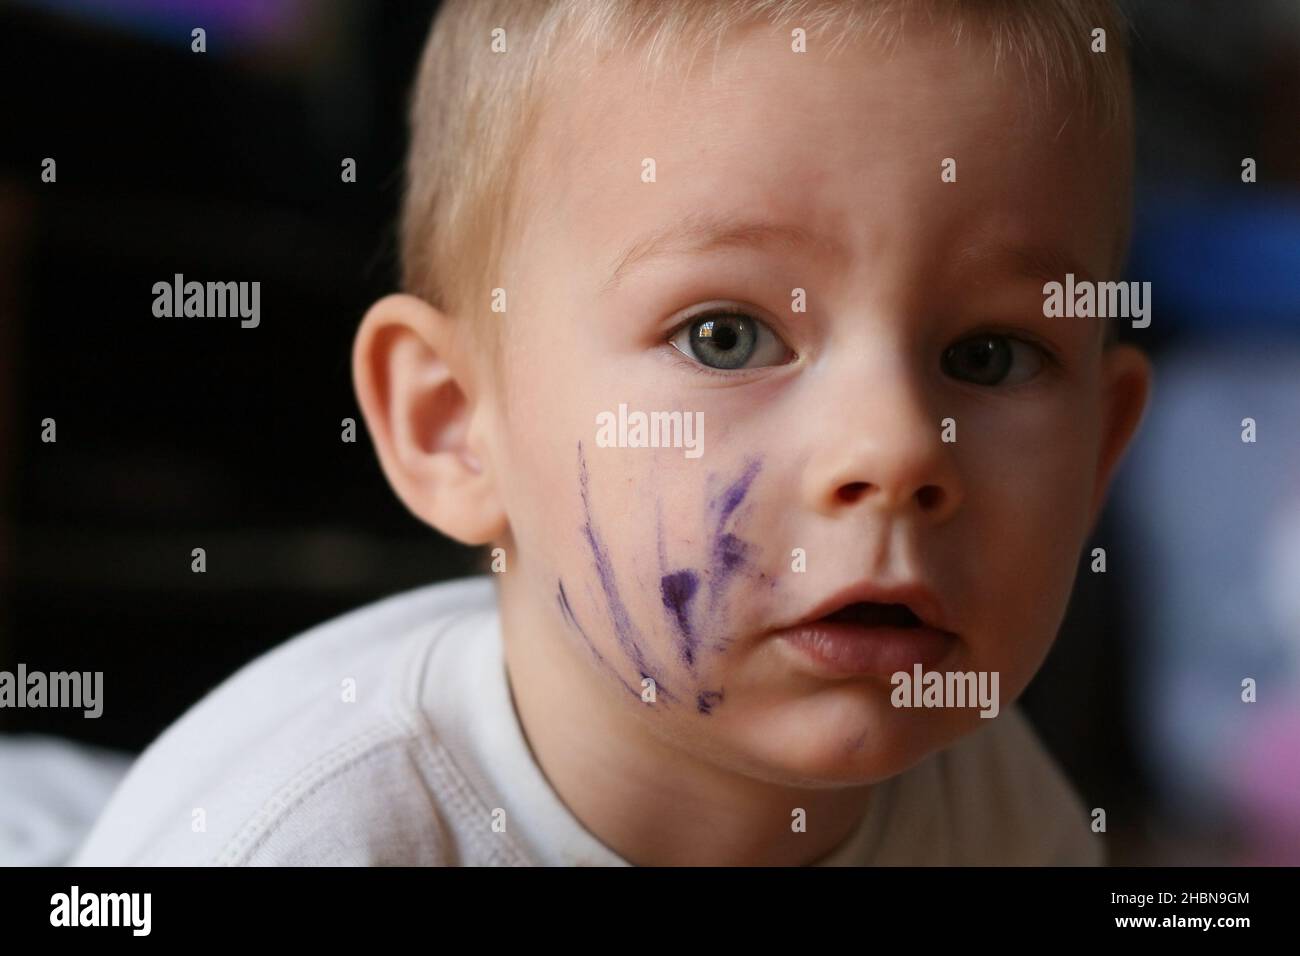 Spensierate il bambino di due anni che ha appena dipinto il suo volto con inchiostro guardando la macchina fotografica Foto Stock